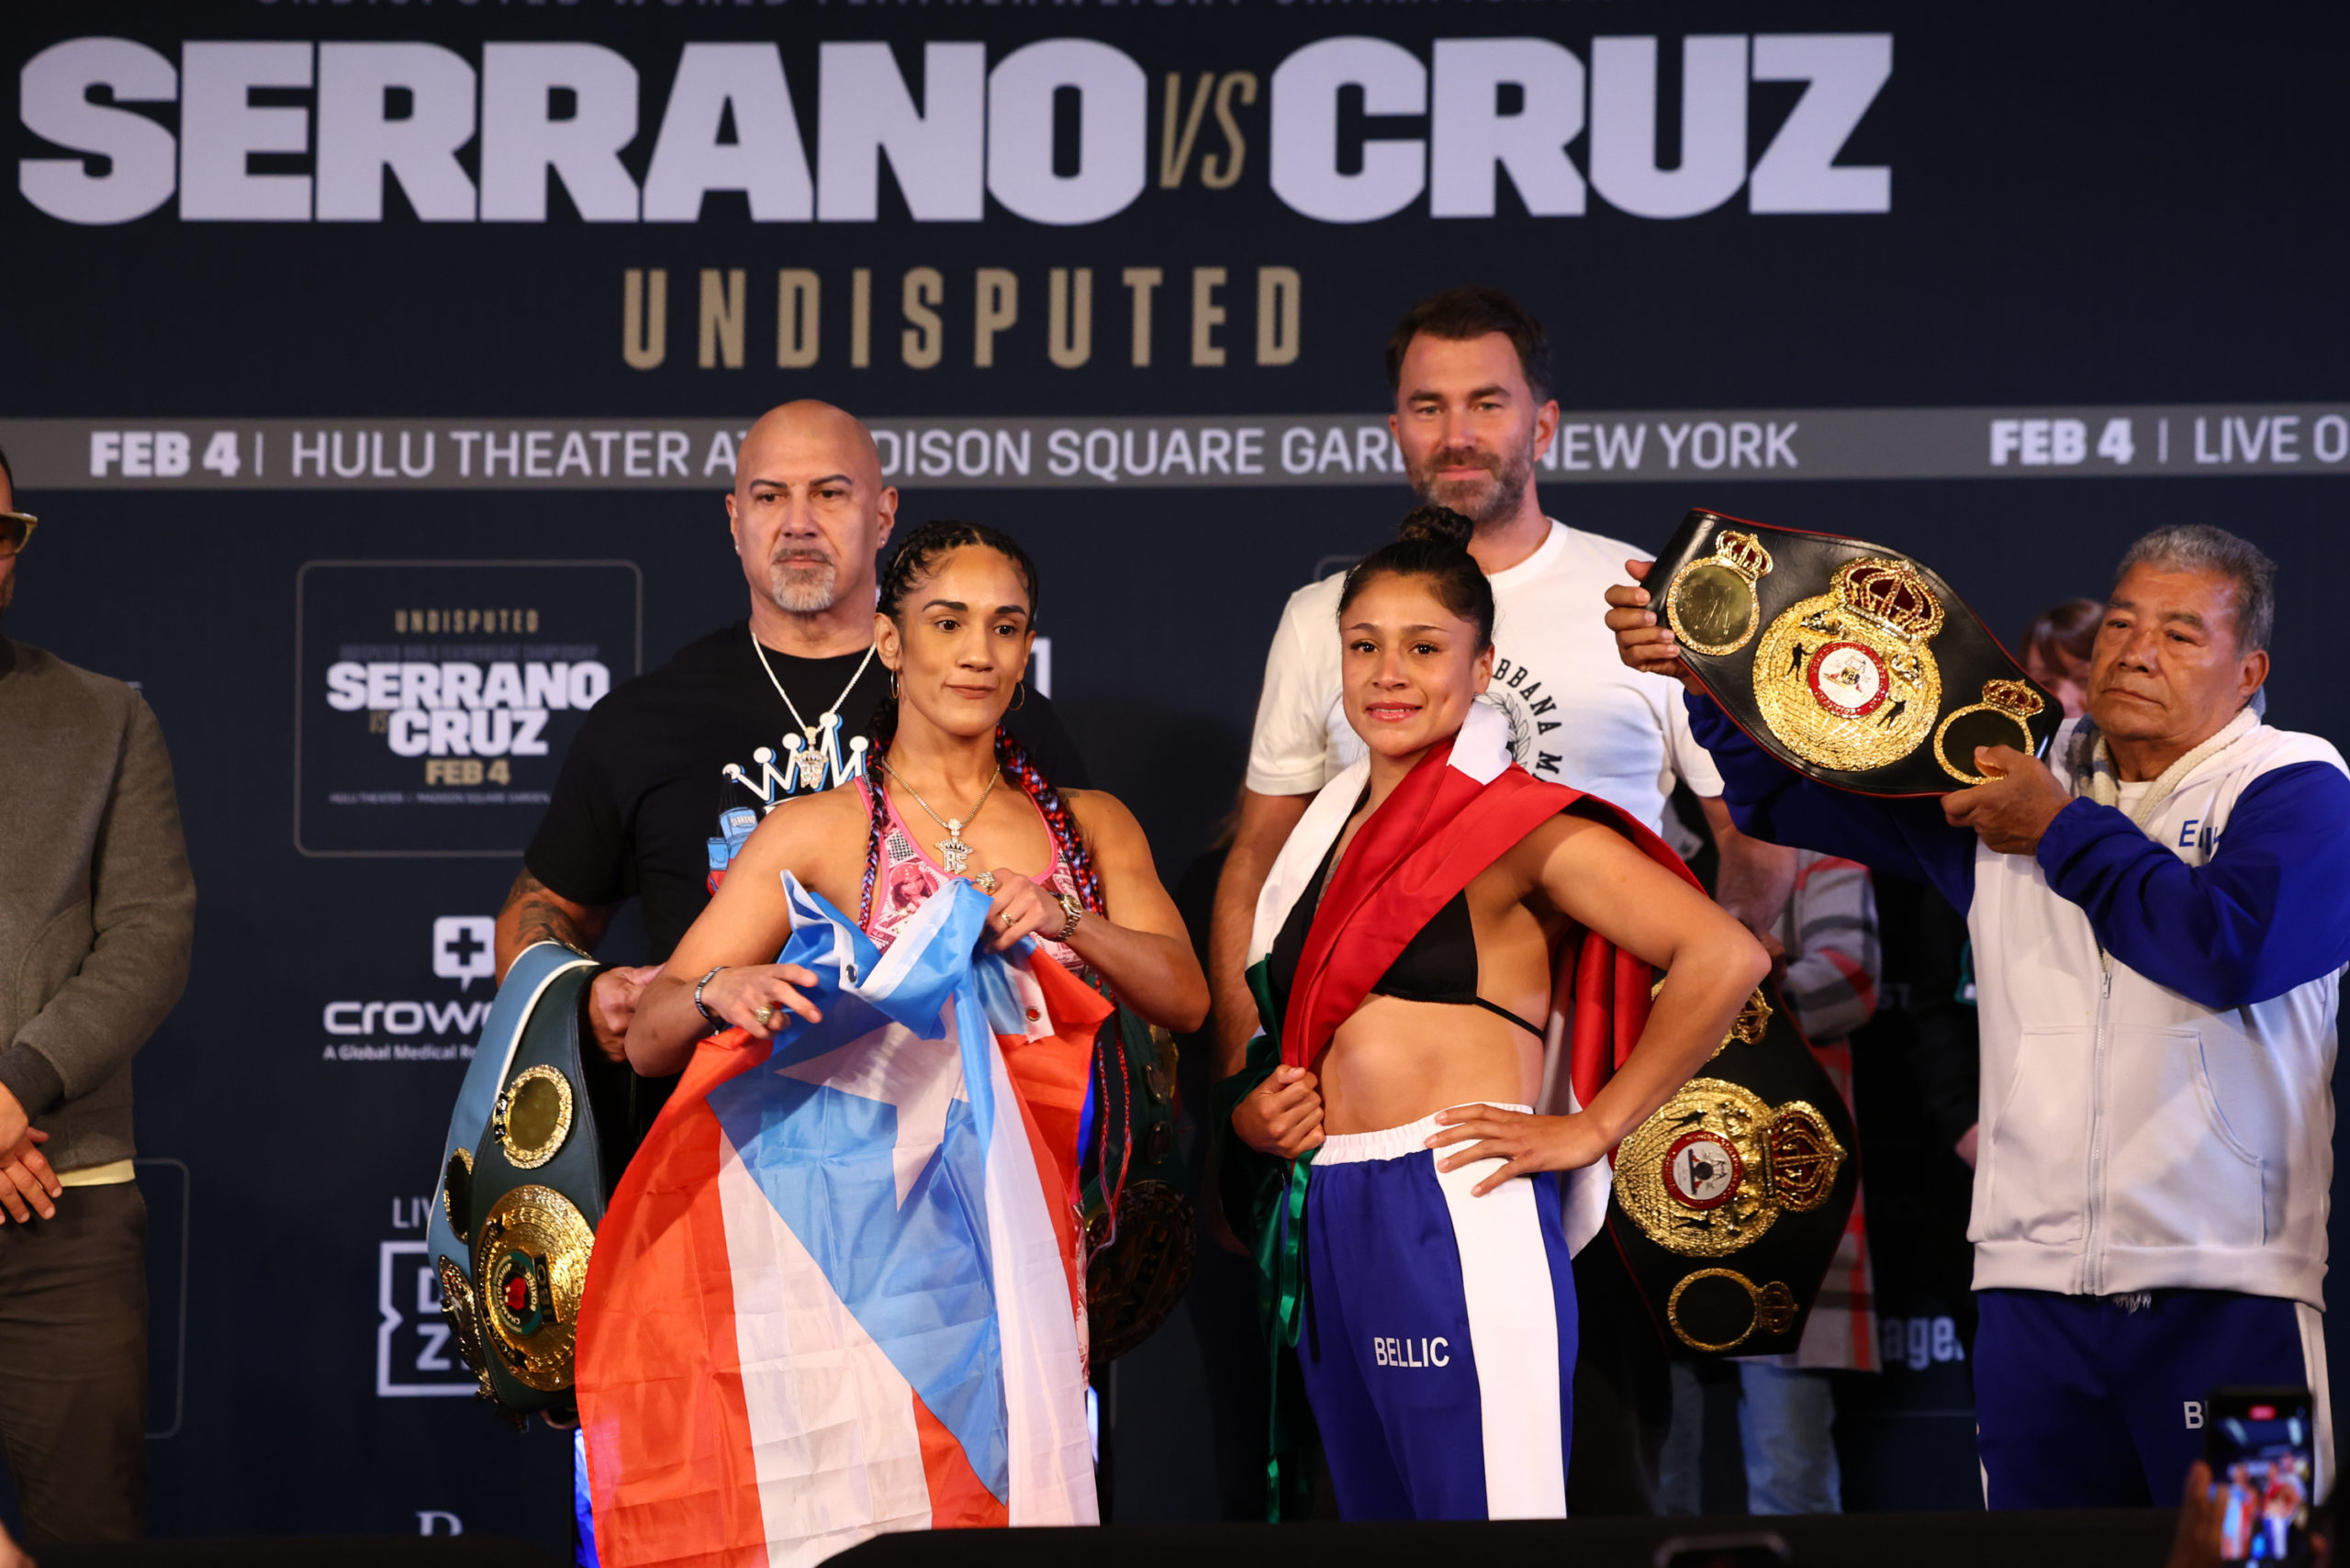 Cruz-Serrano: Women’s Boxing Takes Over MSG